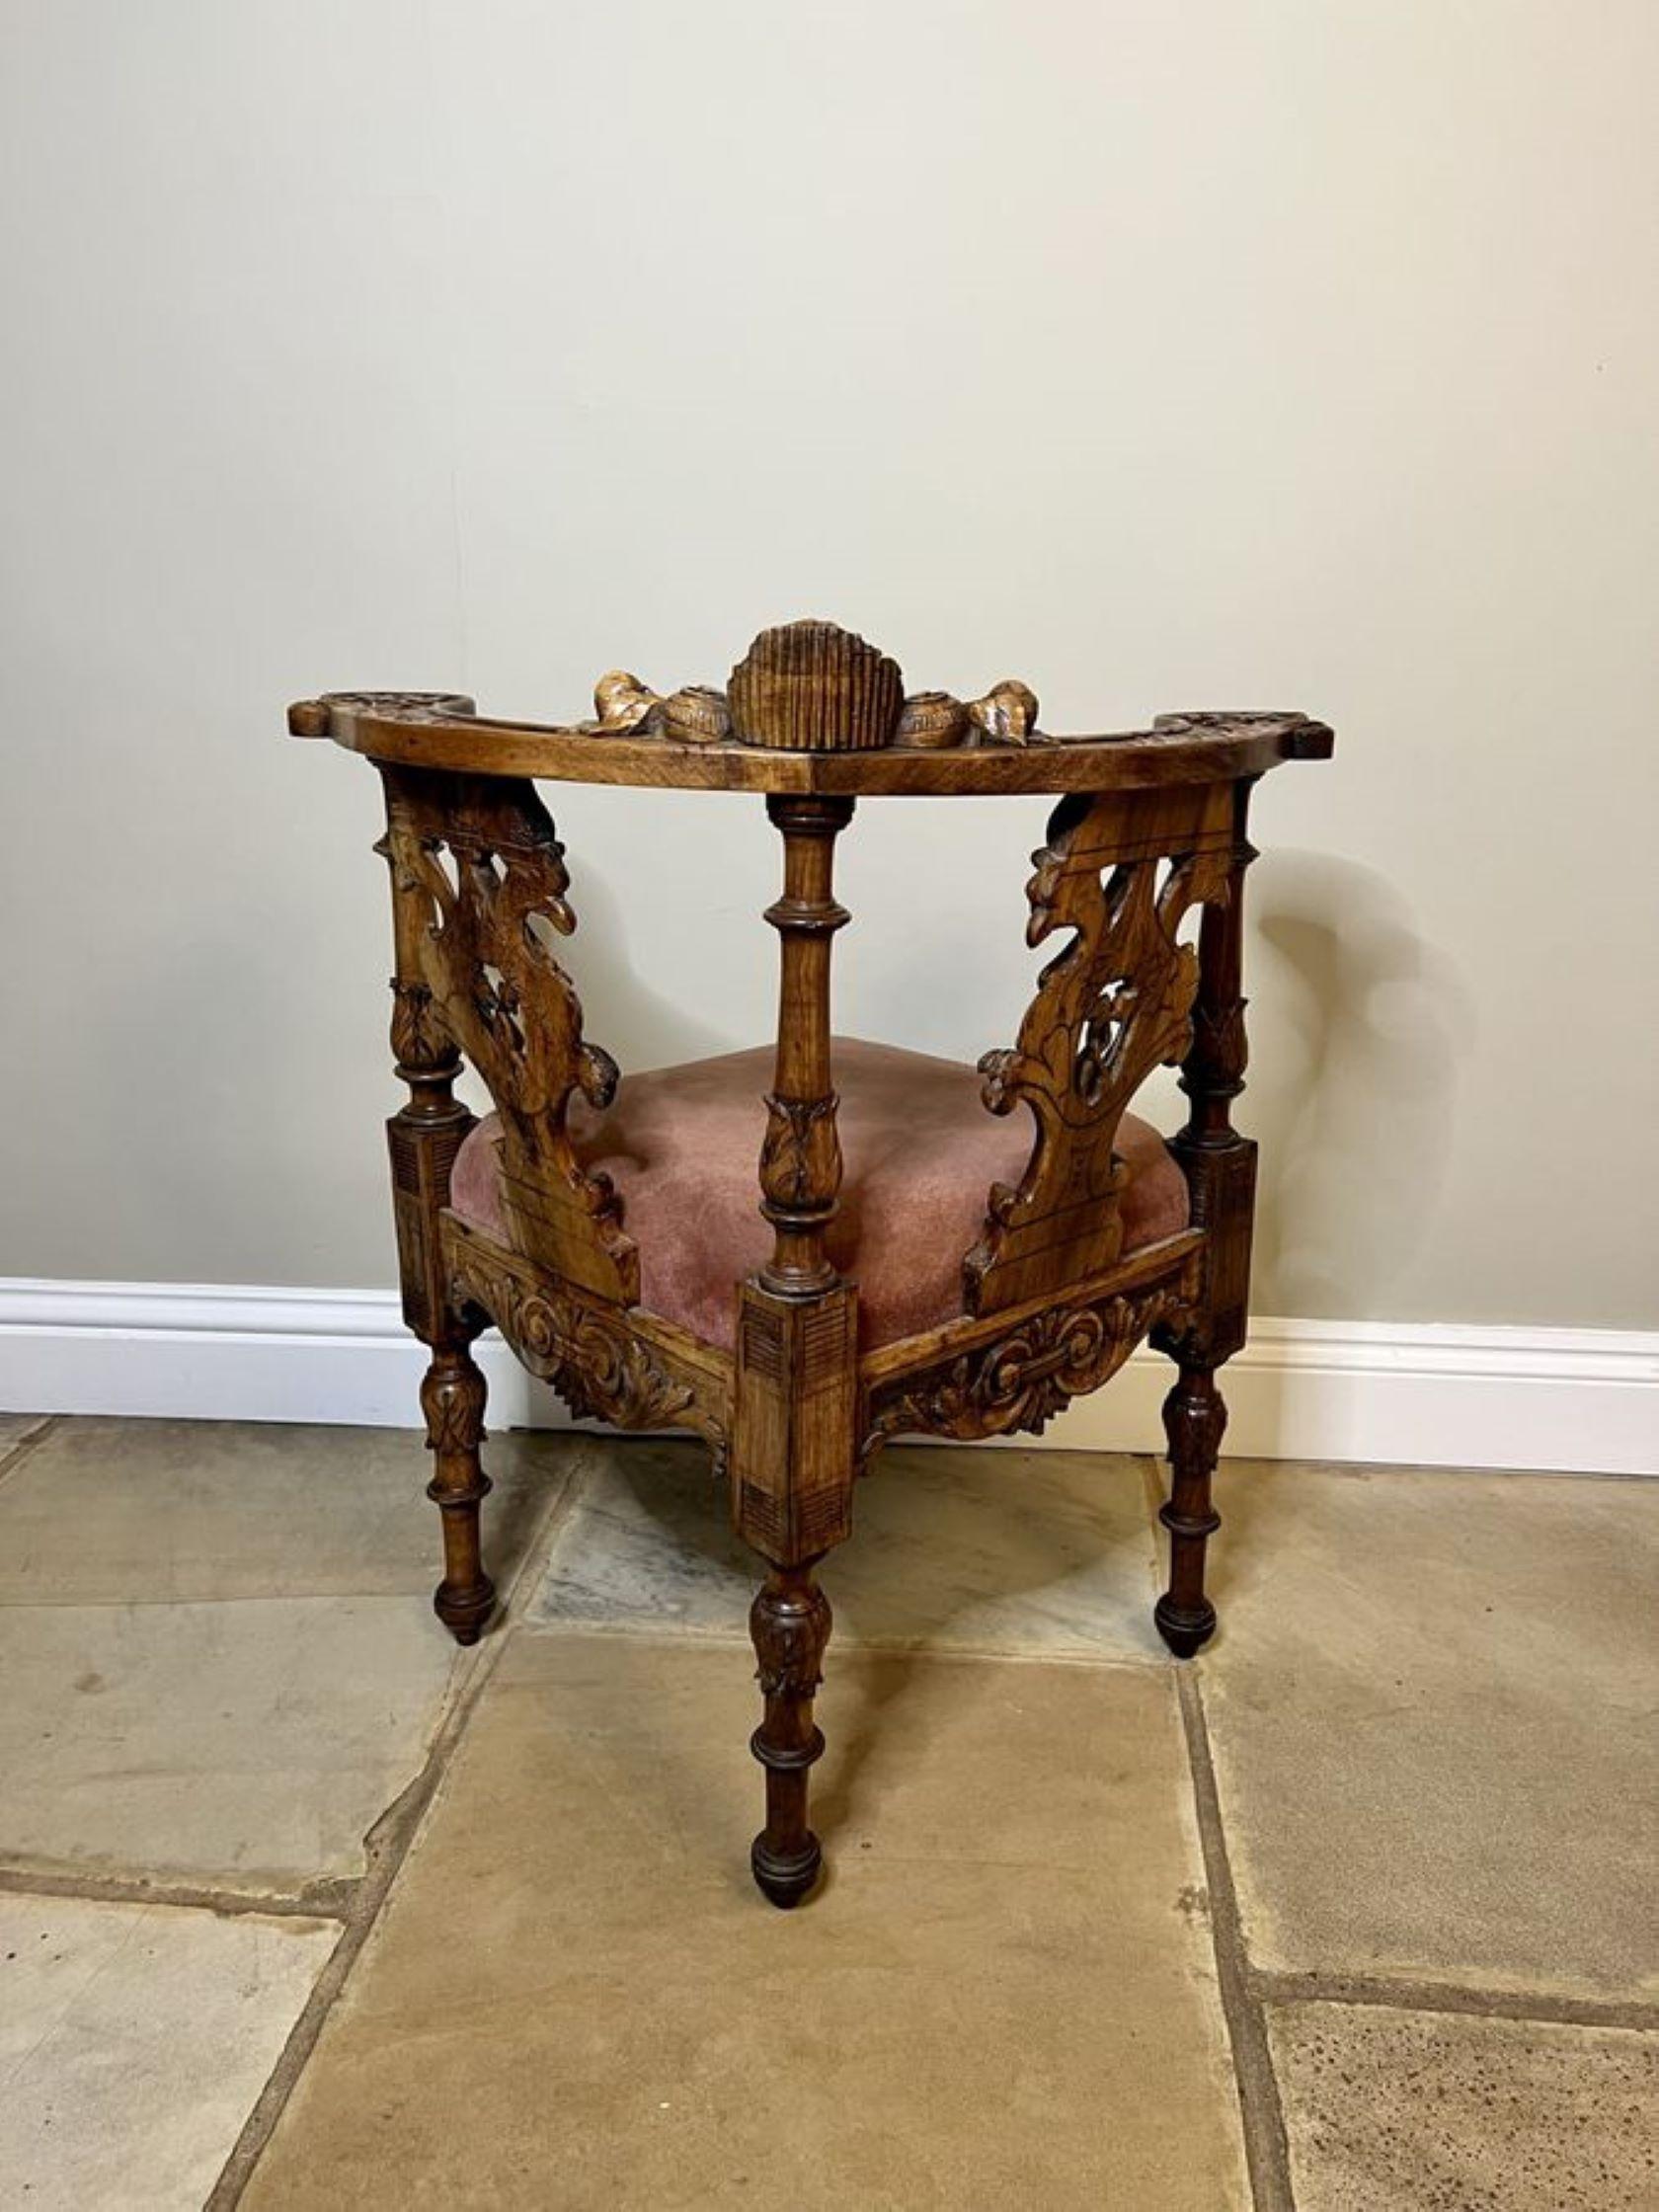 Ancienne chaise d'angle italienne victorienne en noyer sculpté, avec un dossier en forme de chérubin au centre, des griffons et des dragons percés, des supports de colonne tournés et sculptés, un siège en forme de goutte d'eau, une frise en noyer